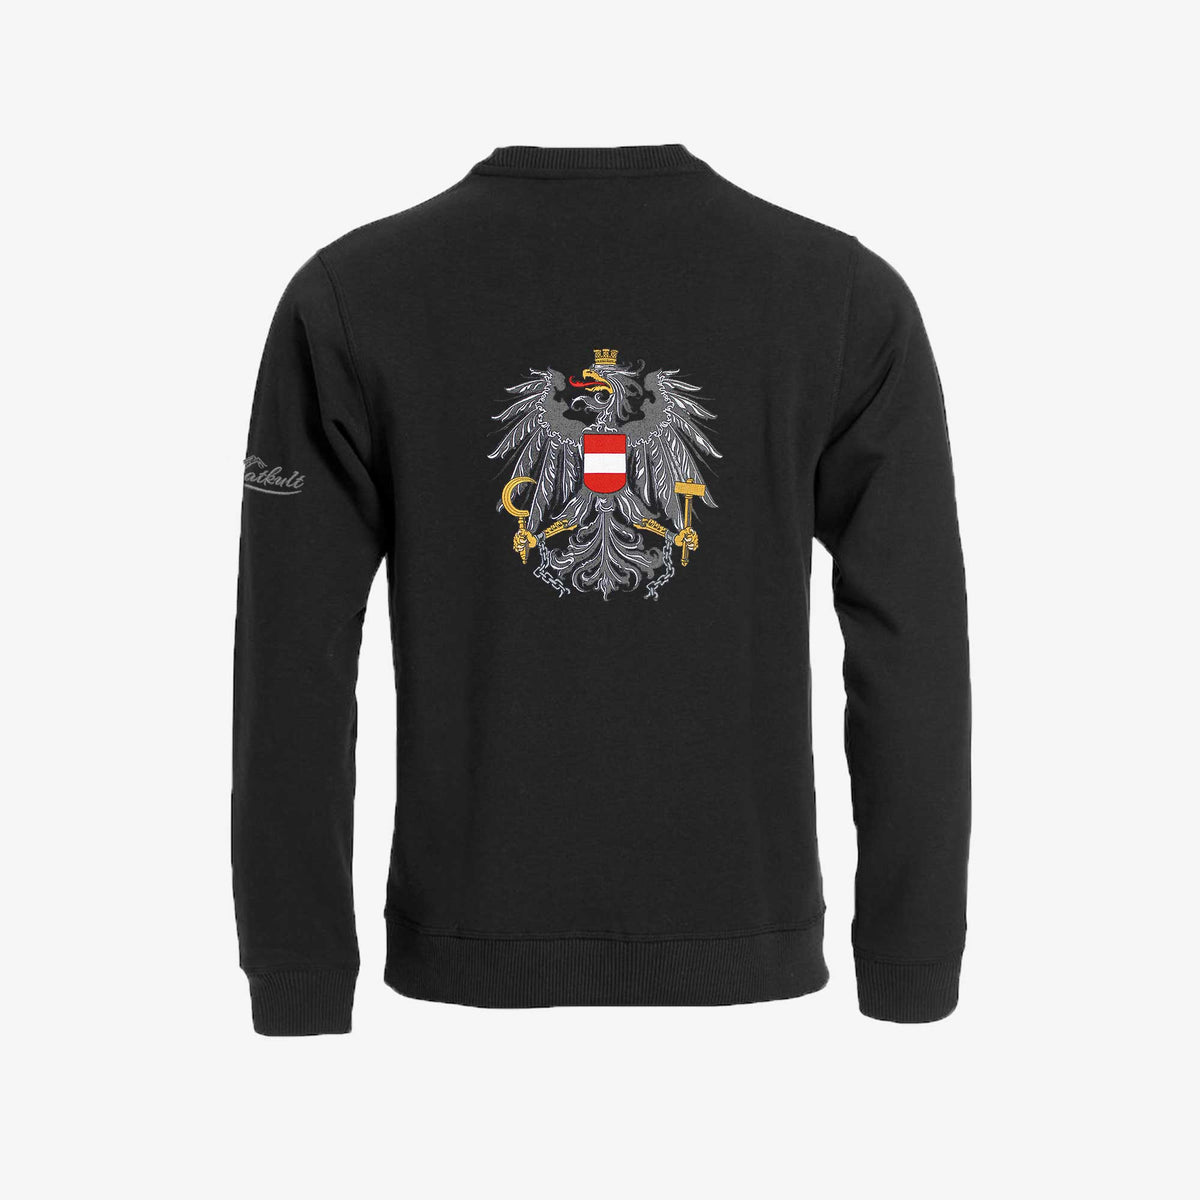 Österreich Pullover mit Adler Stickerei #Farbe_Schwarz